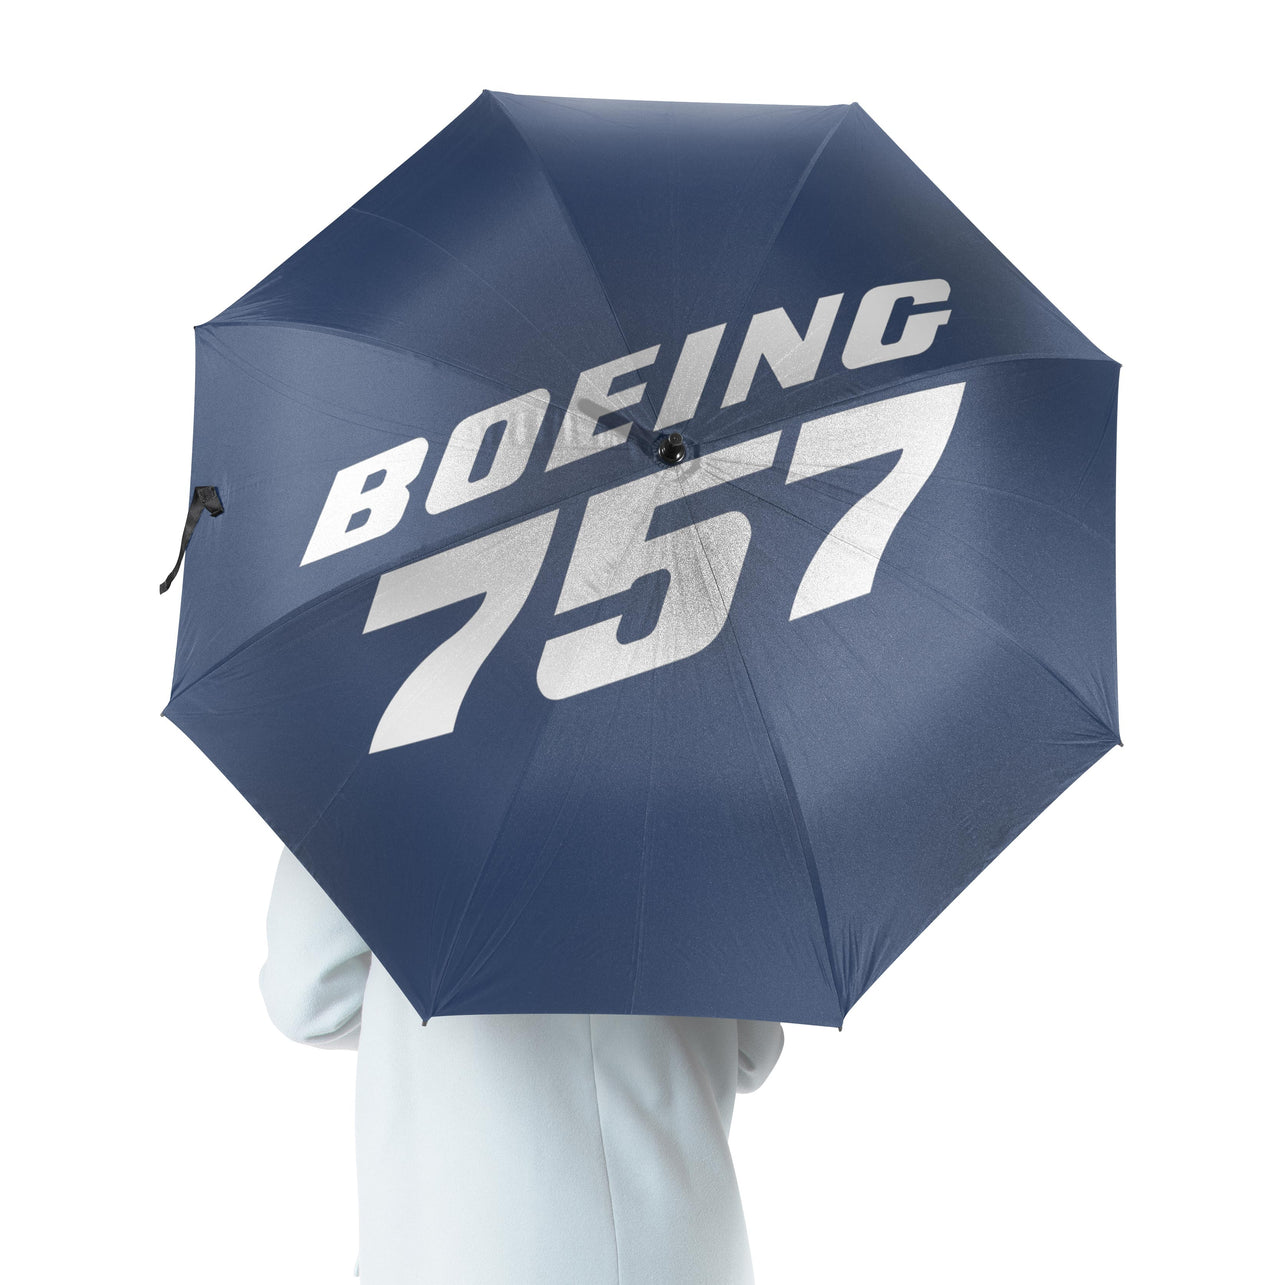 Boeing 757 & Text Designed Umbrella